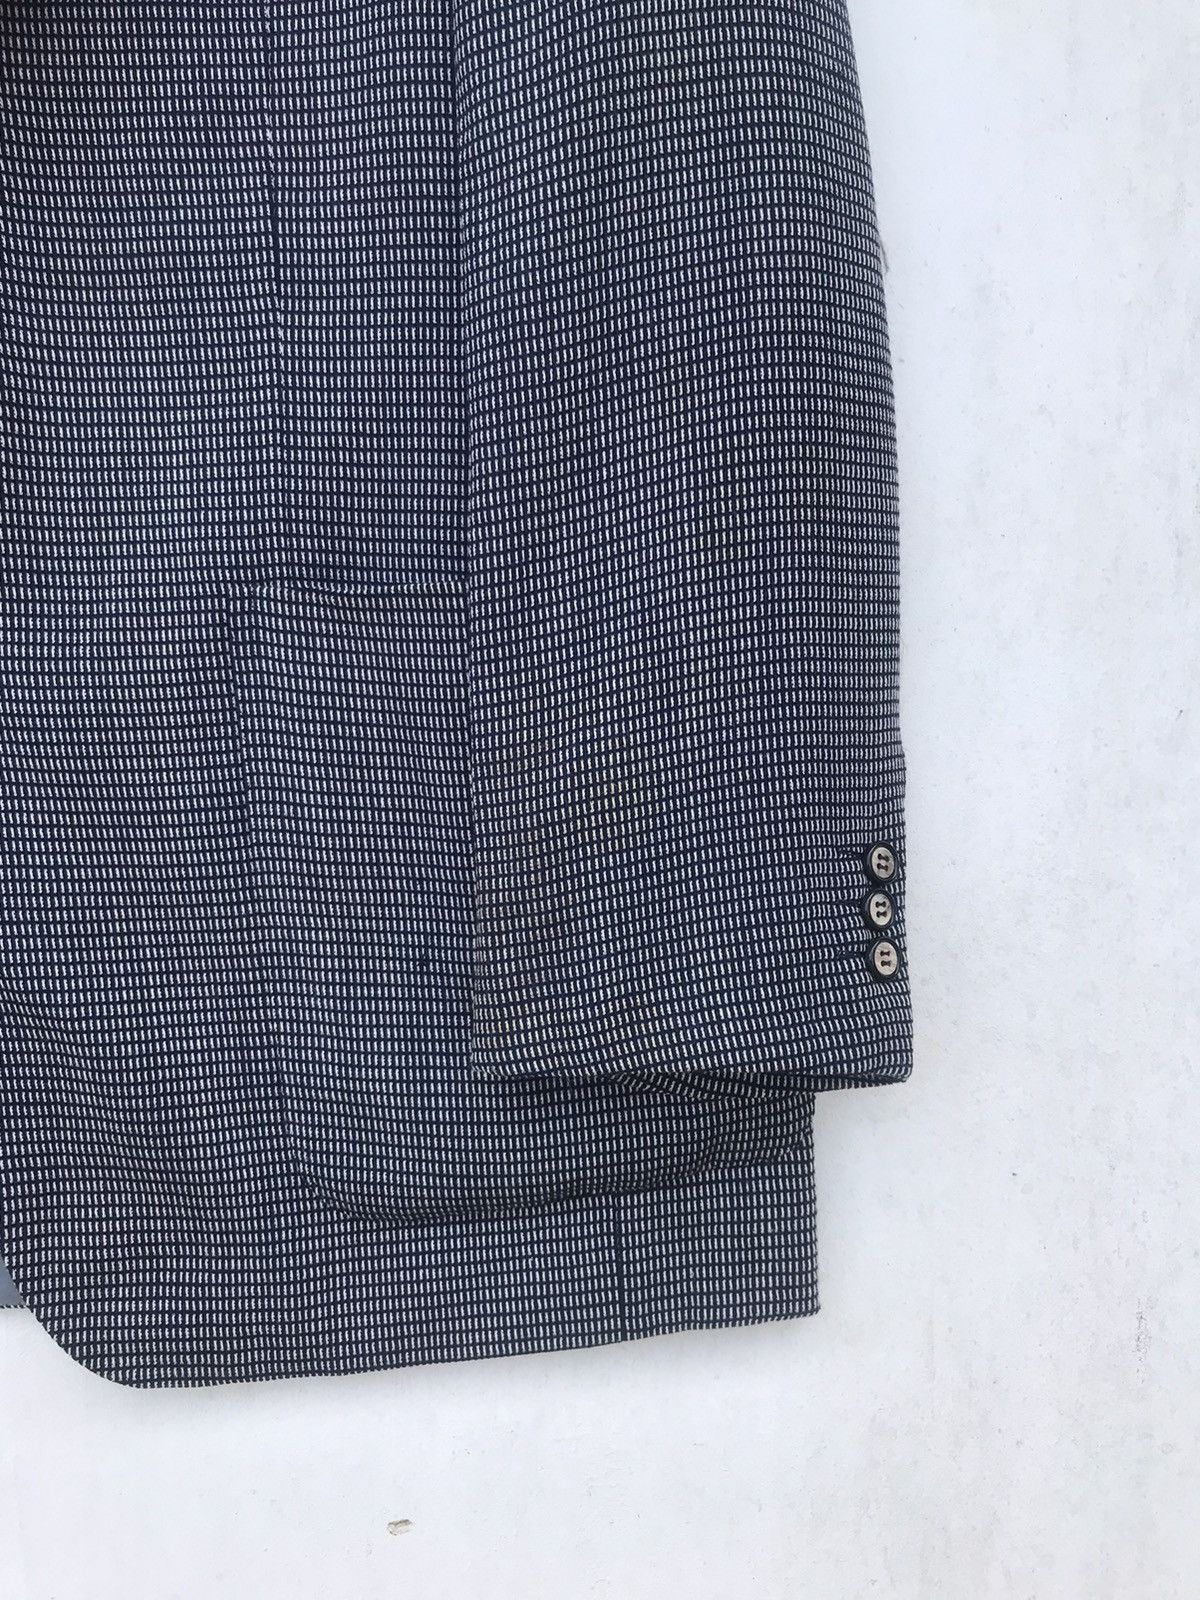 Luxury Lanvin Paris Suit Jacket - 10